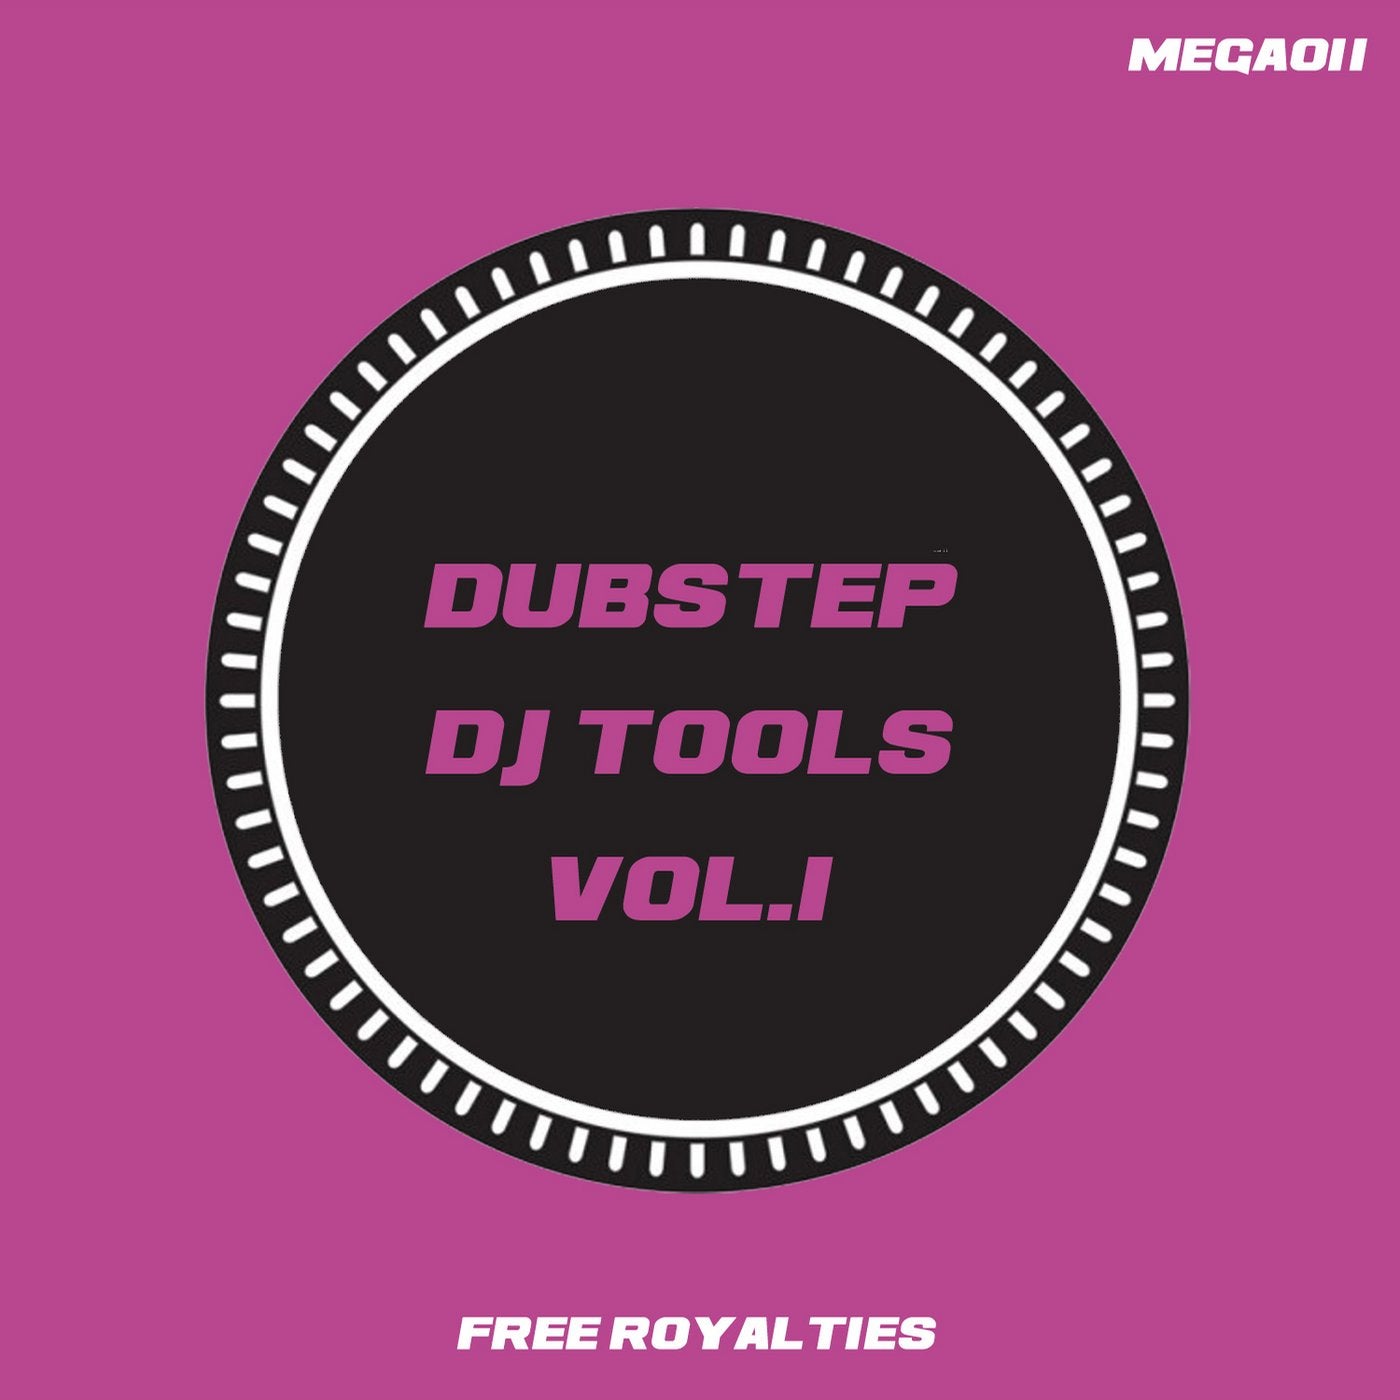 Dubstep DJ Tools Vol.1